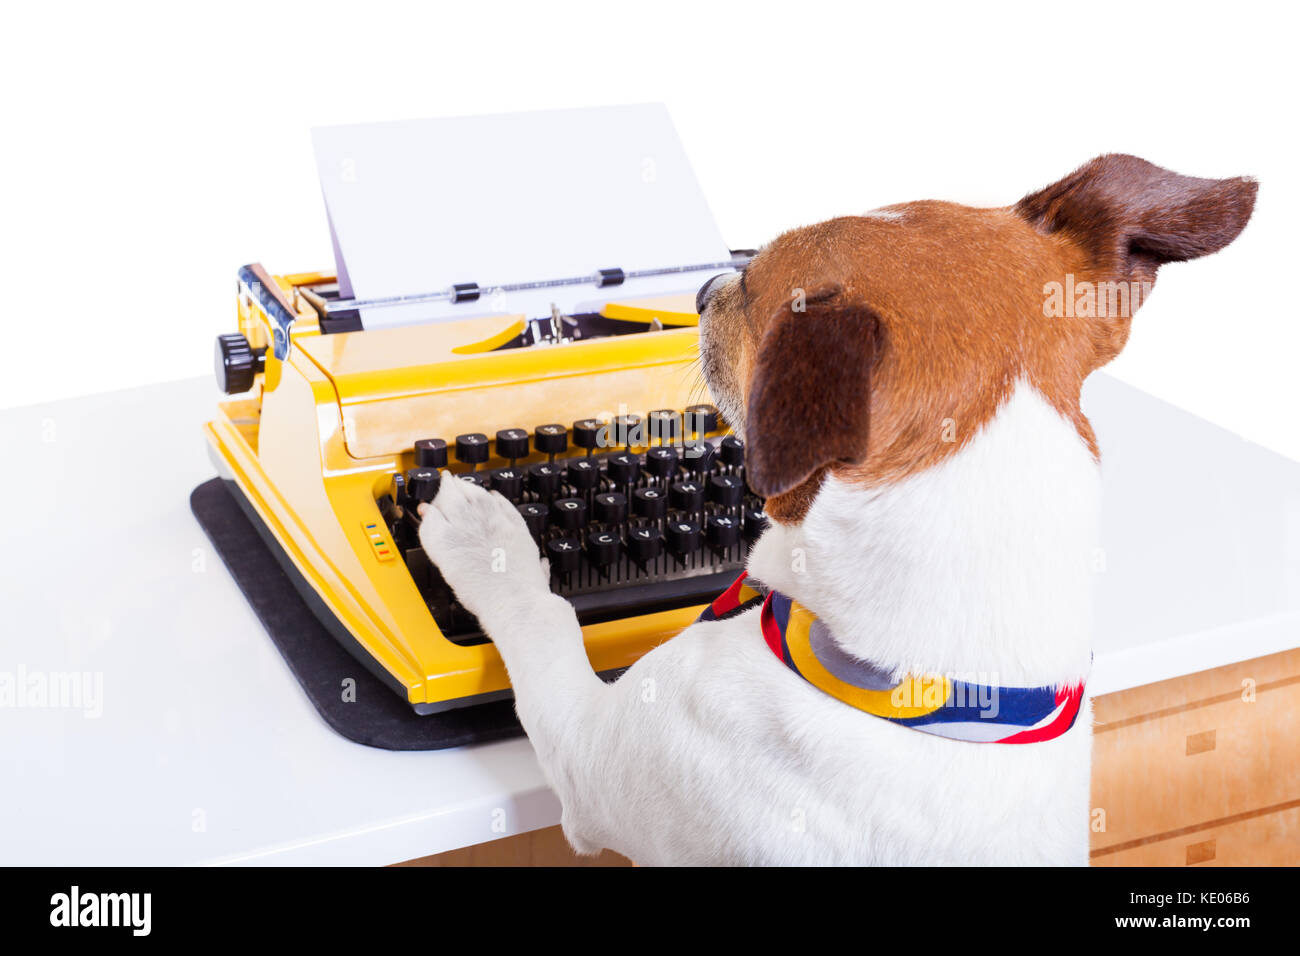 jack-russell-secretario-perro-escribir-en-un-teclado-de-maquina-de-escribir-aislado-sobre-fondo-blanco-ke06b6.jpg